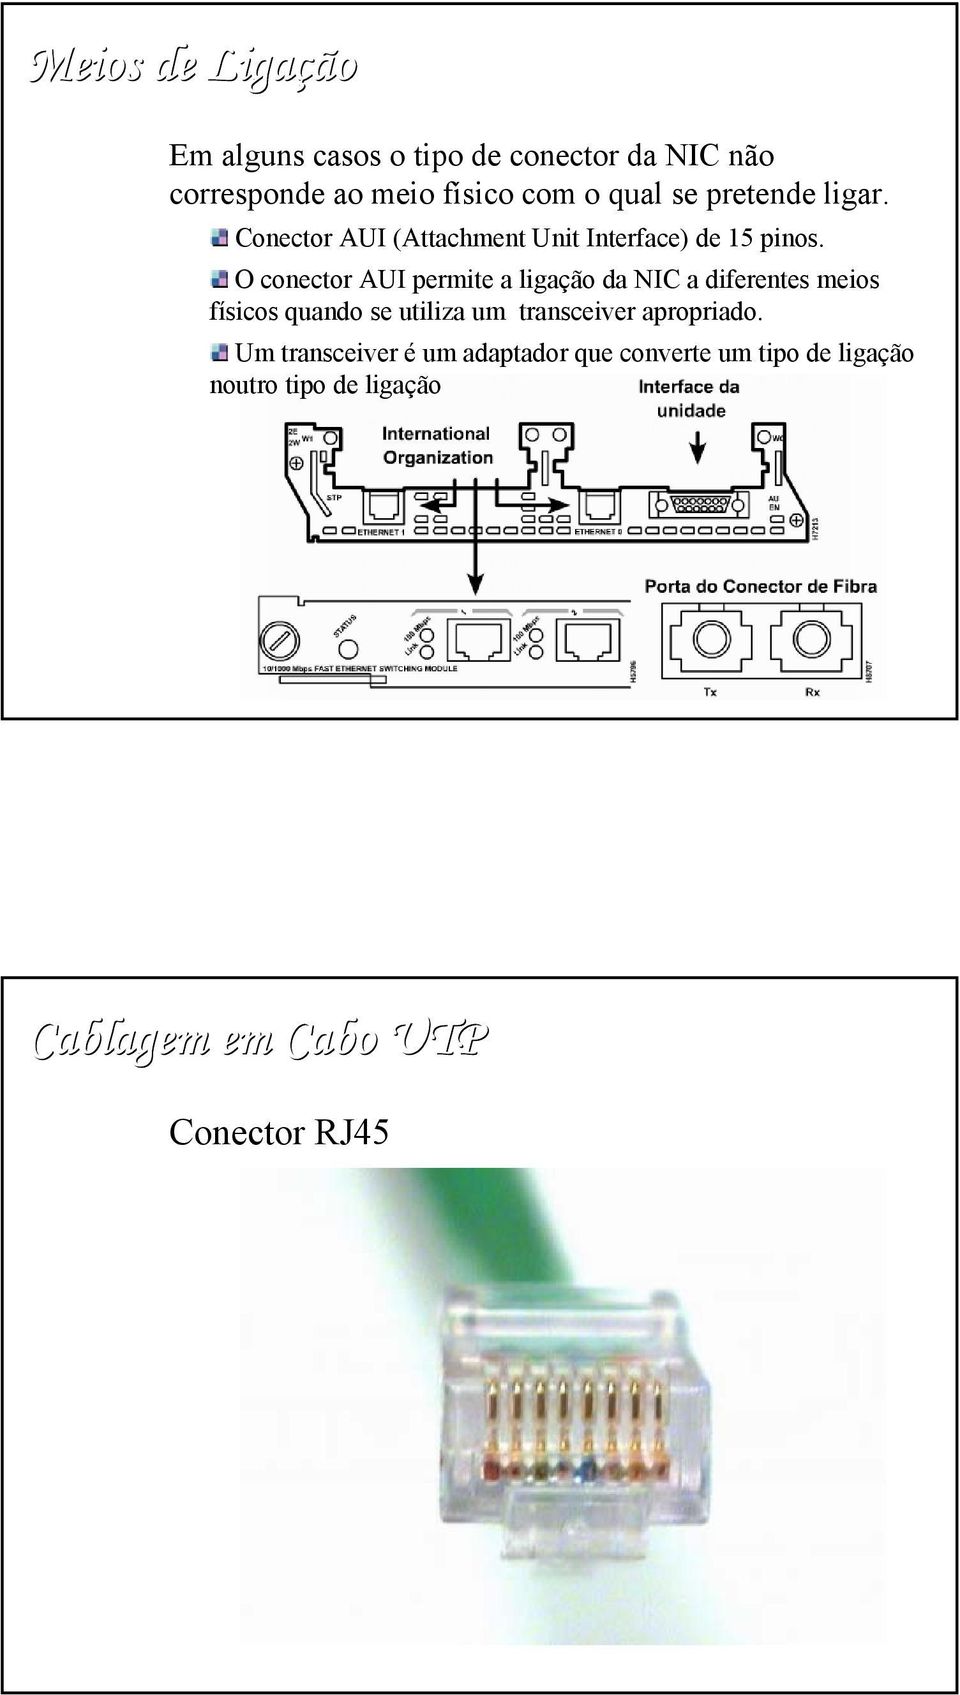 O conector AUI permite a ligação da NIC a diferentes meios físicos quando se utiliza um transceiver